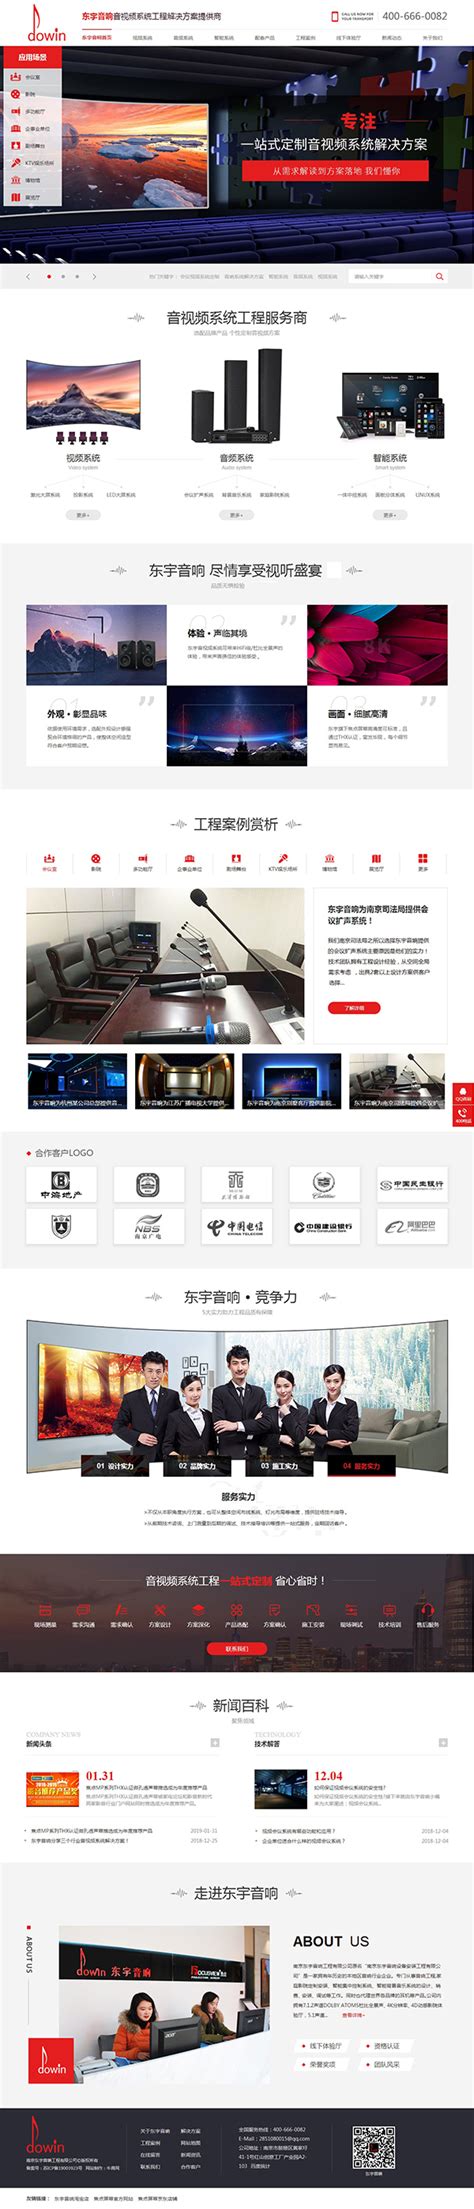 南京东宇音响工程-牛商网营销型网站案例展示